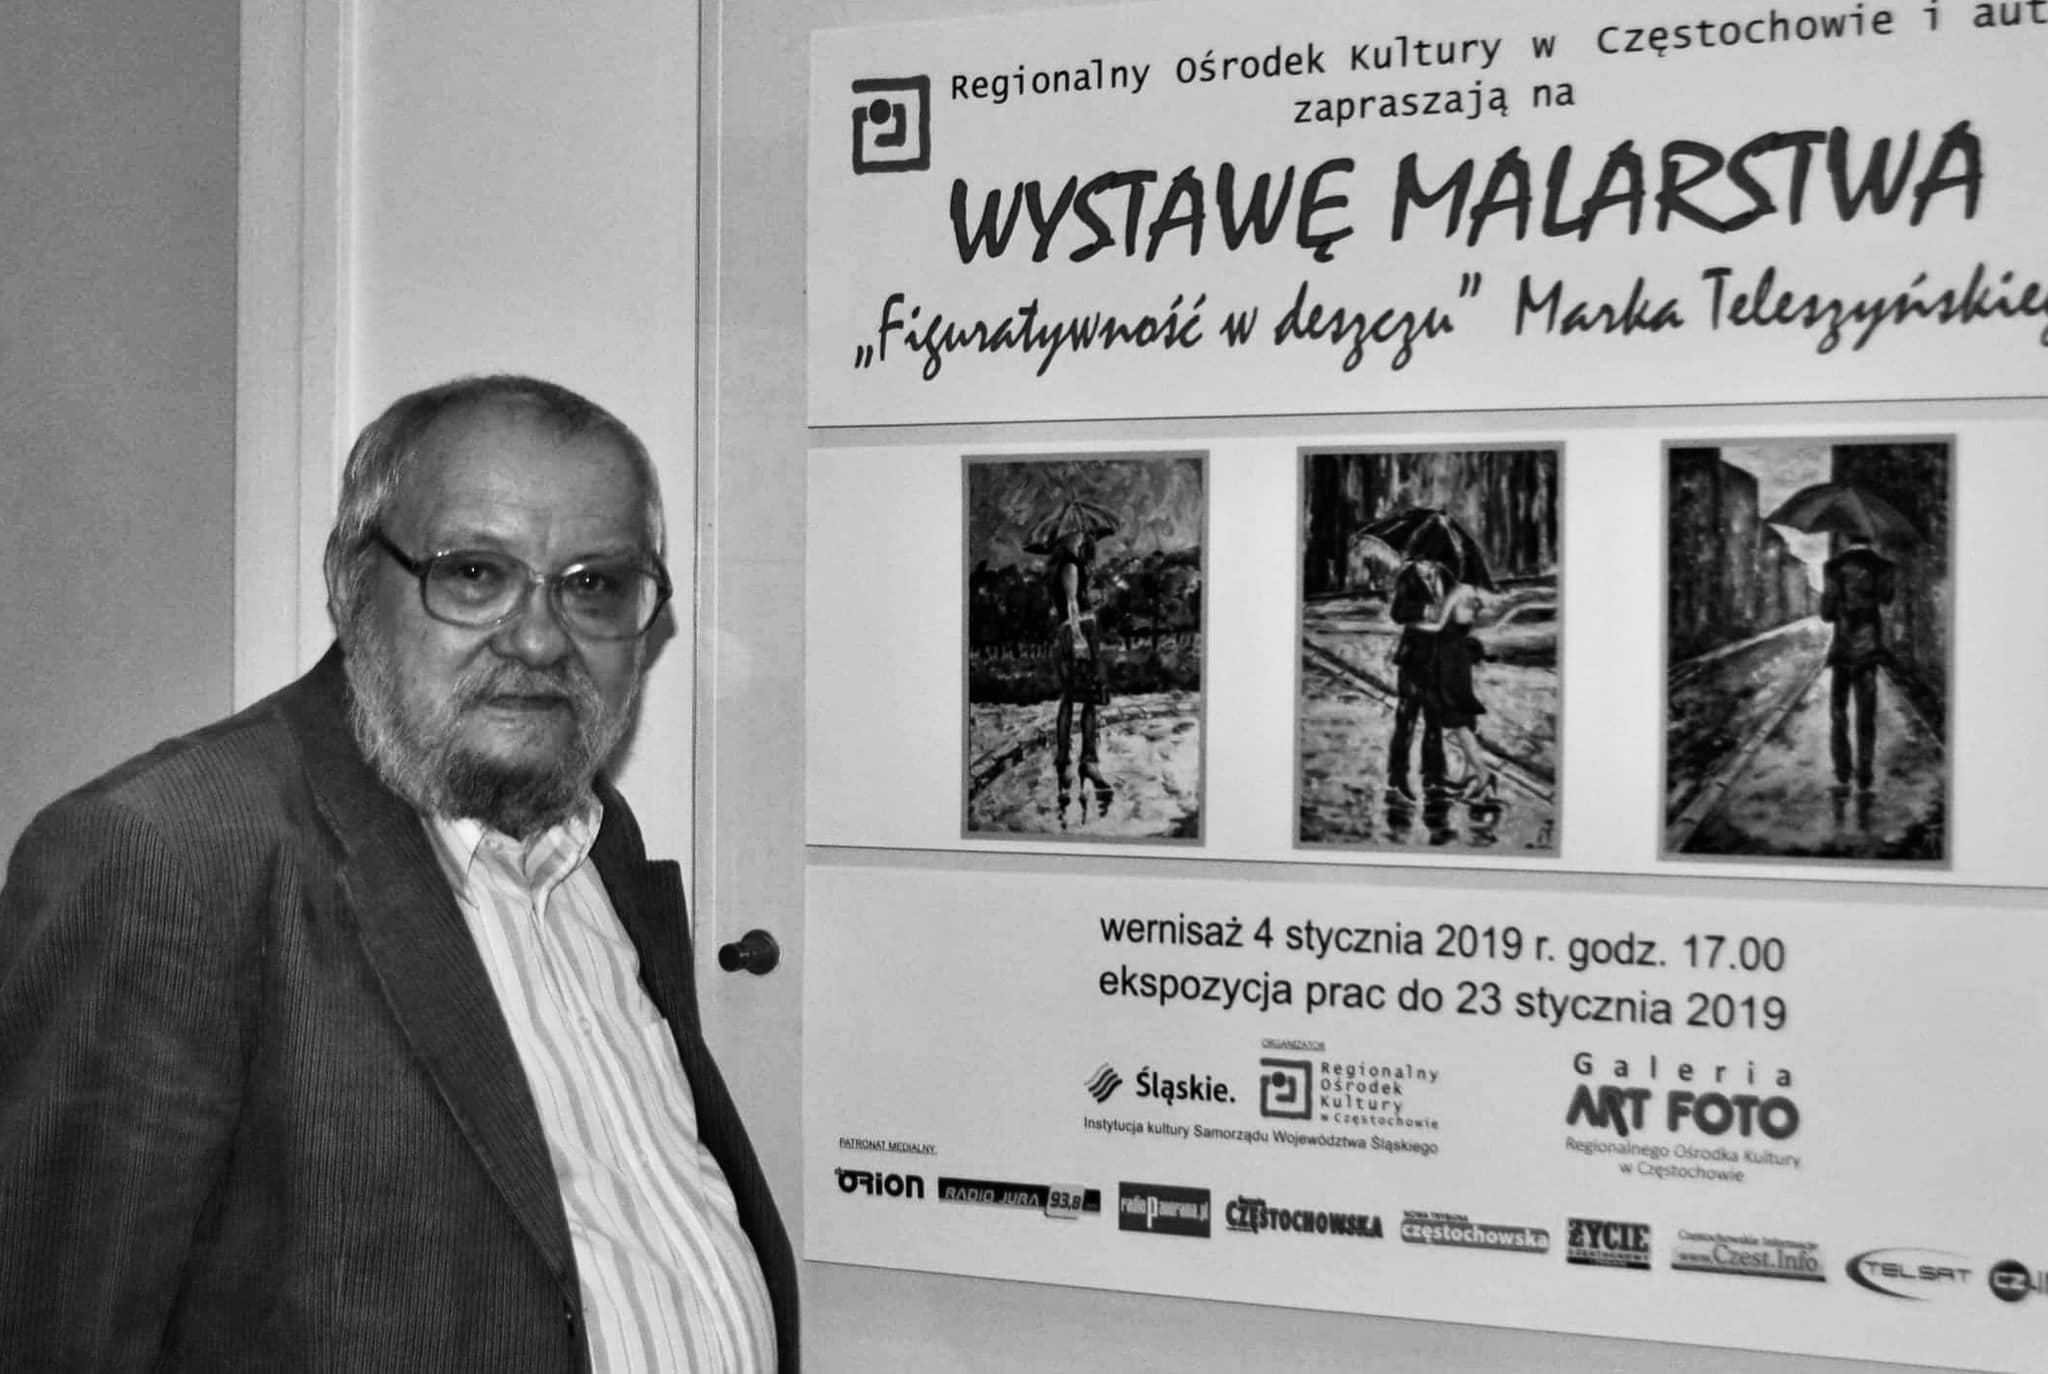 Zmarł malarz Marek Teleszyński. Był najstarszym absolwentem UJD w Częstochowie 1